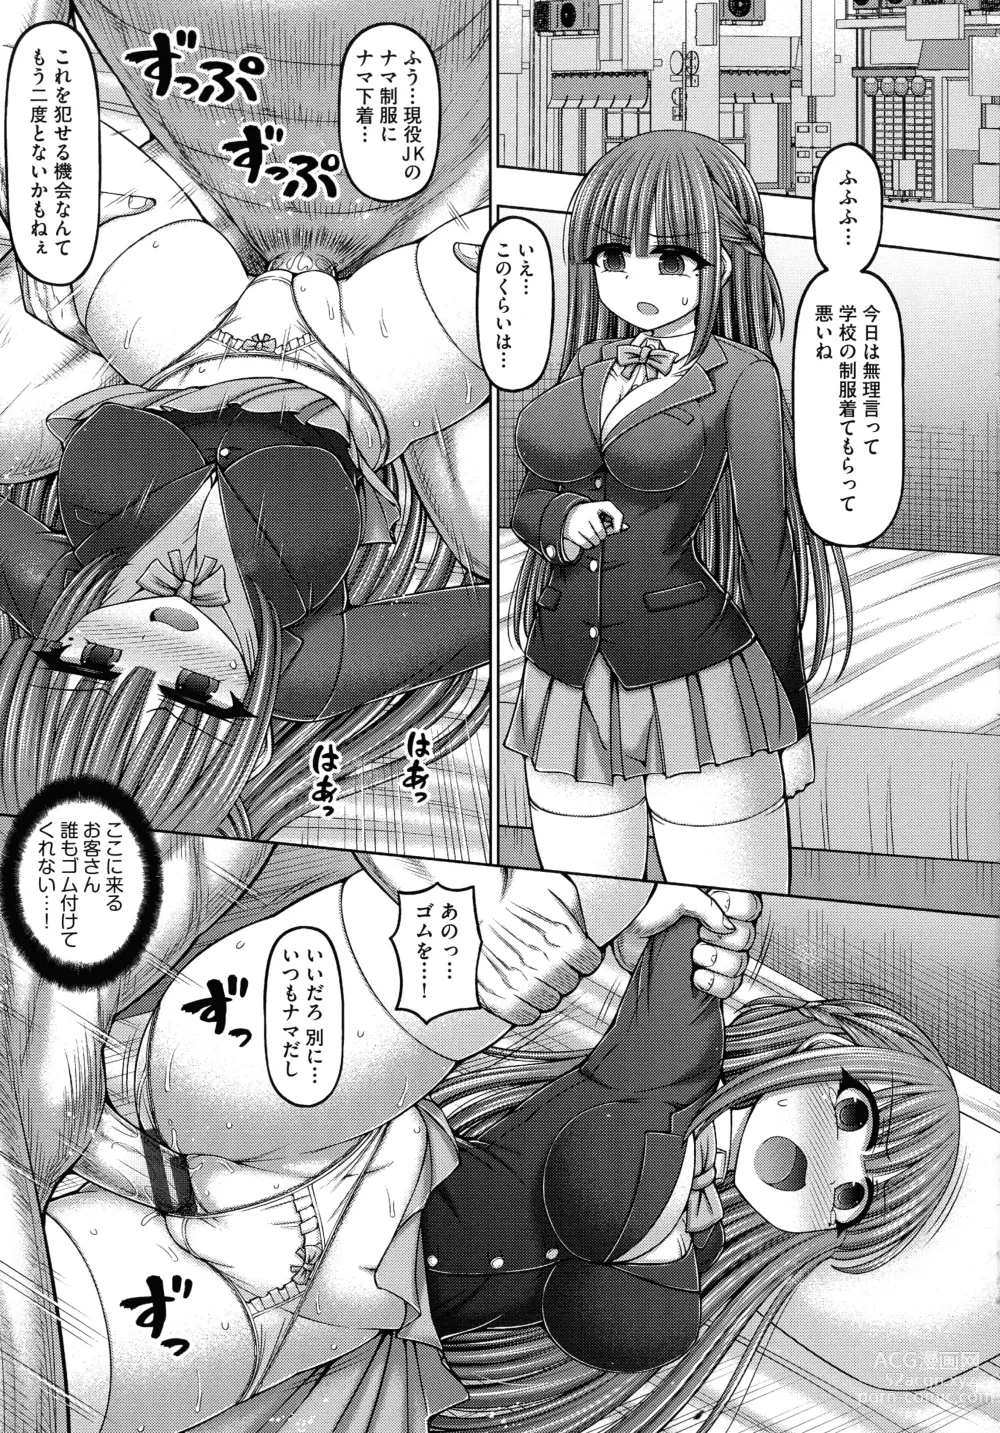 Page 201 of manga Jujutsushi ni Tensei Shita node Koujo Zenin Dorei ni Shite Mita